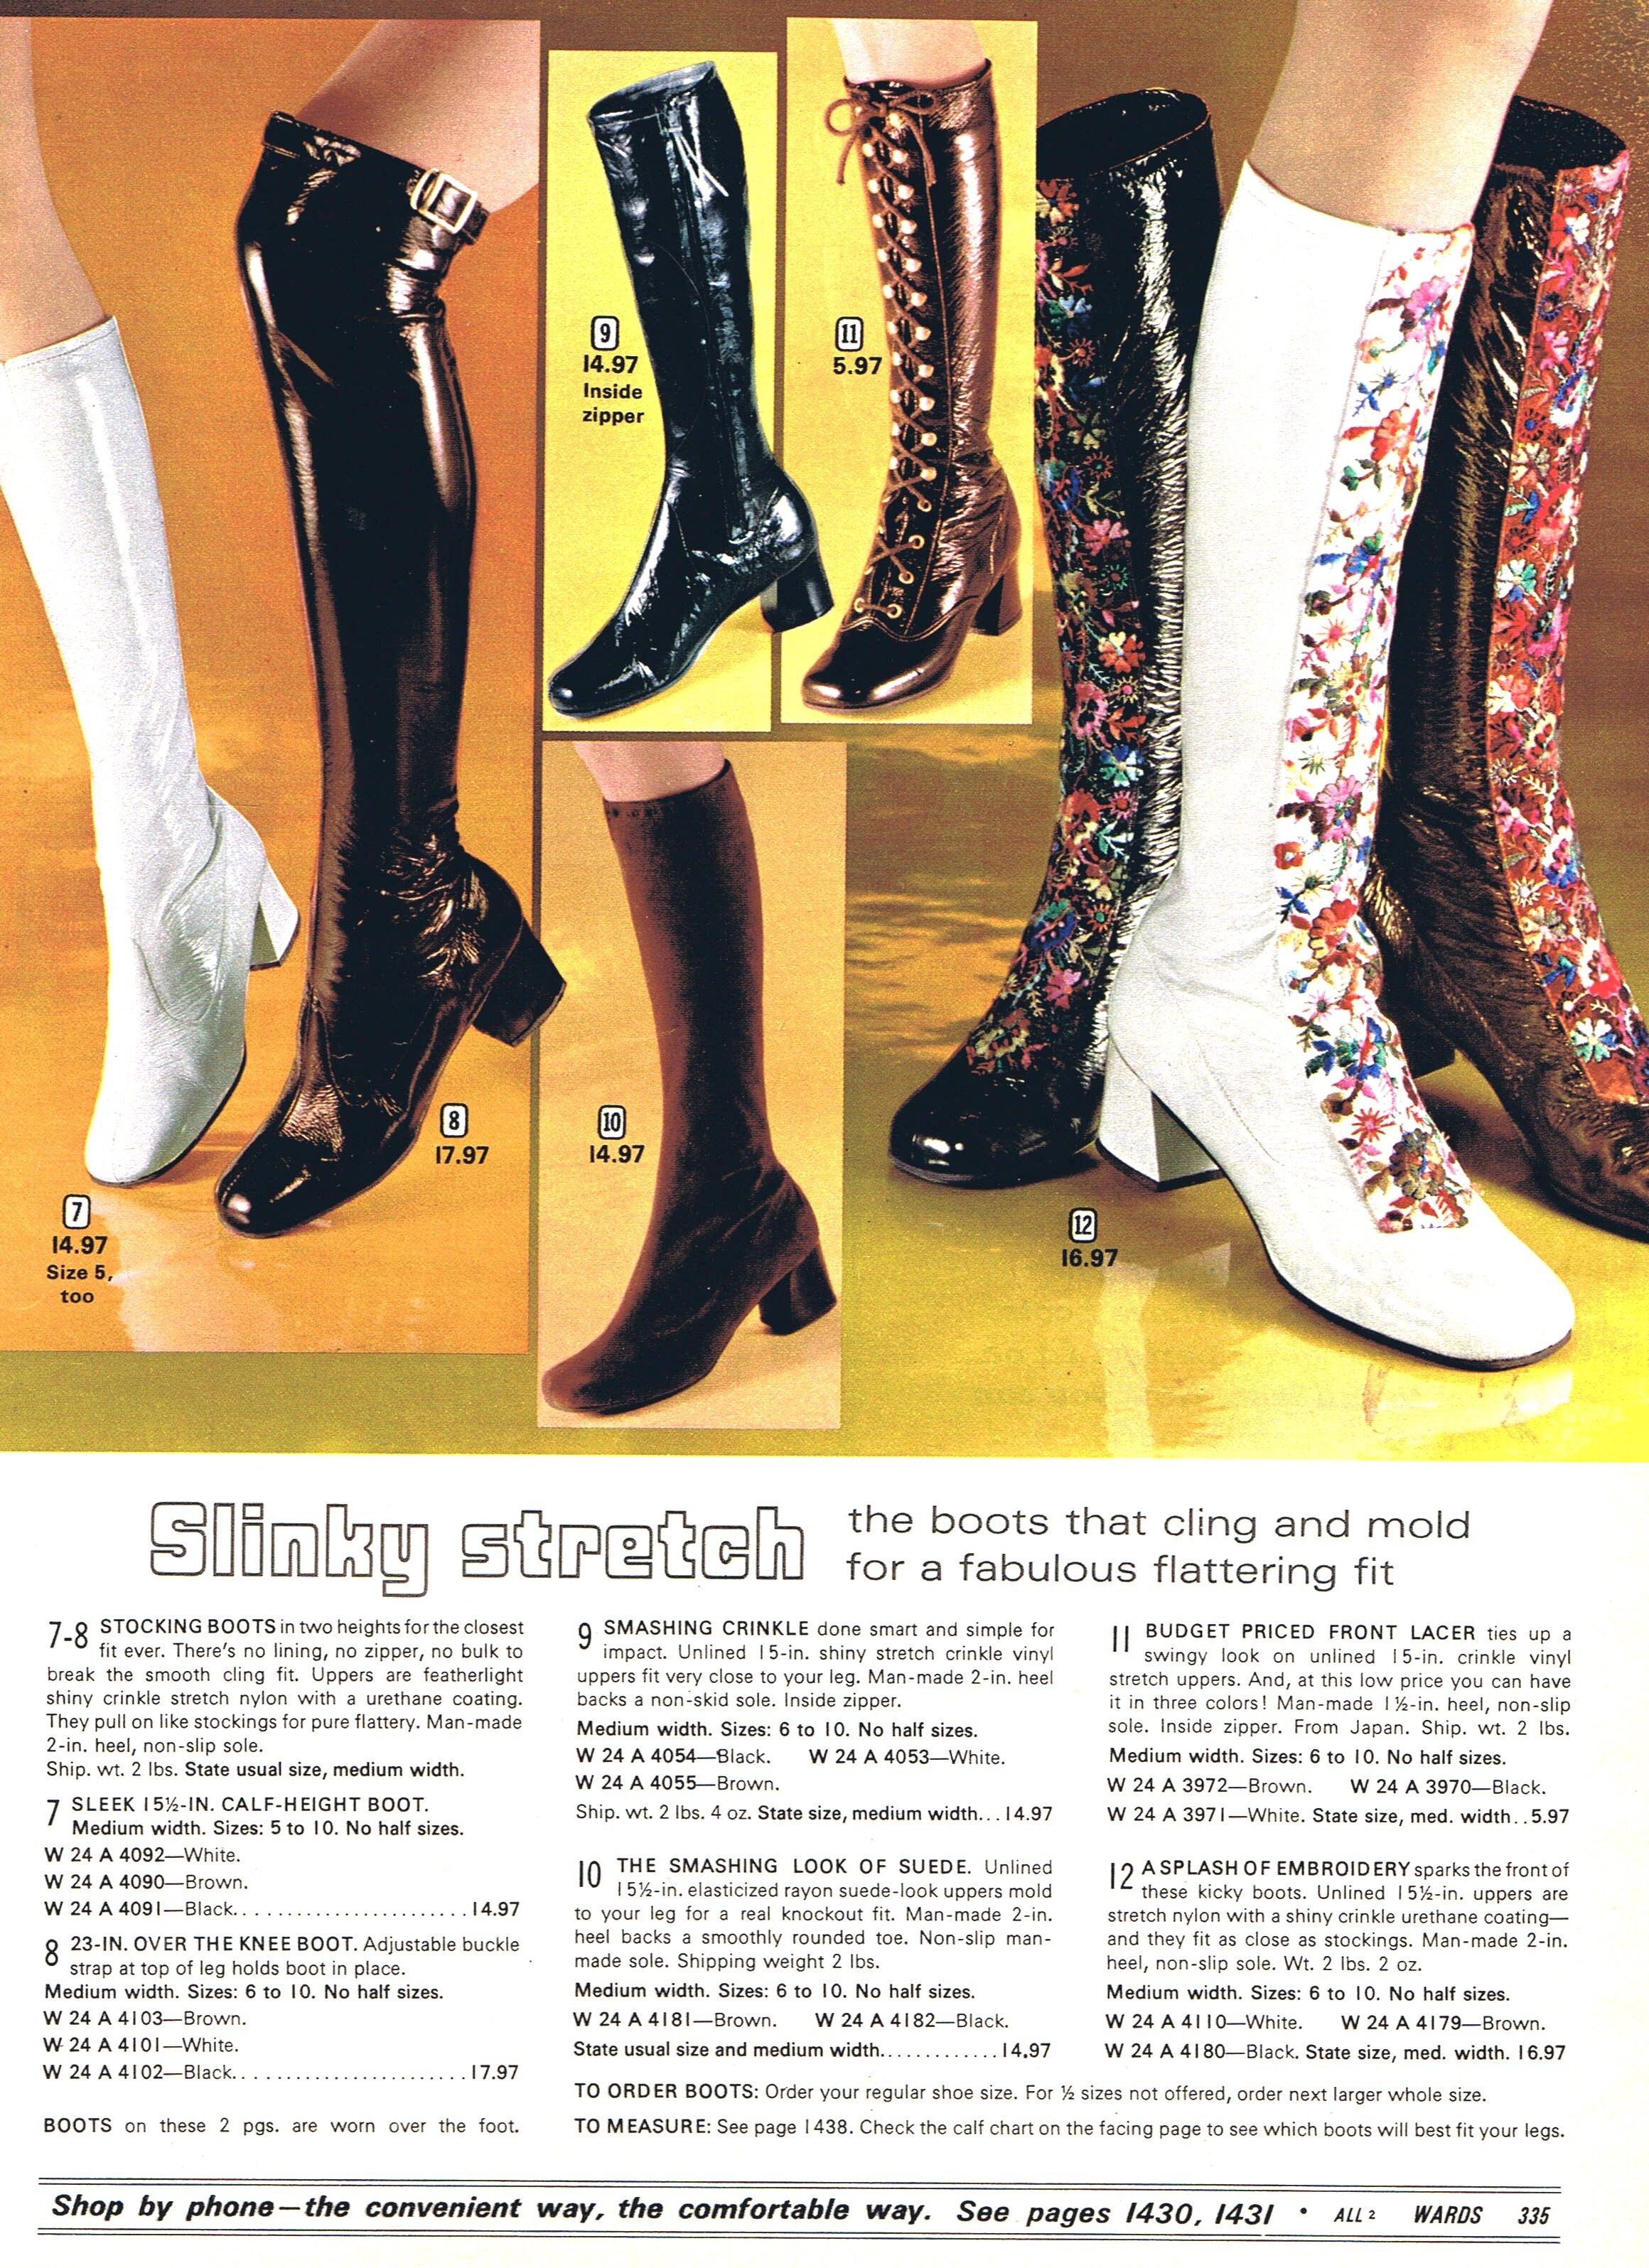 обувь 60 х годов фото женские